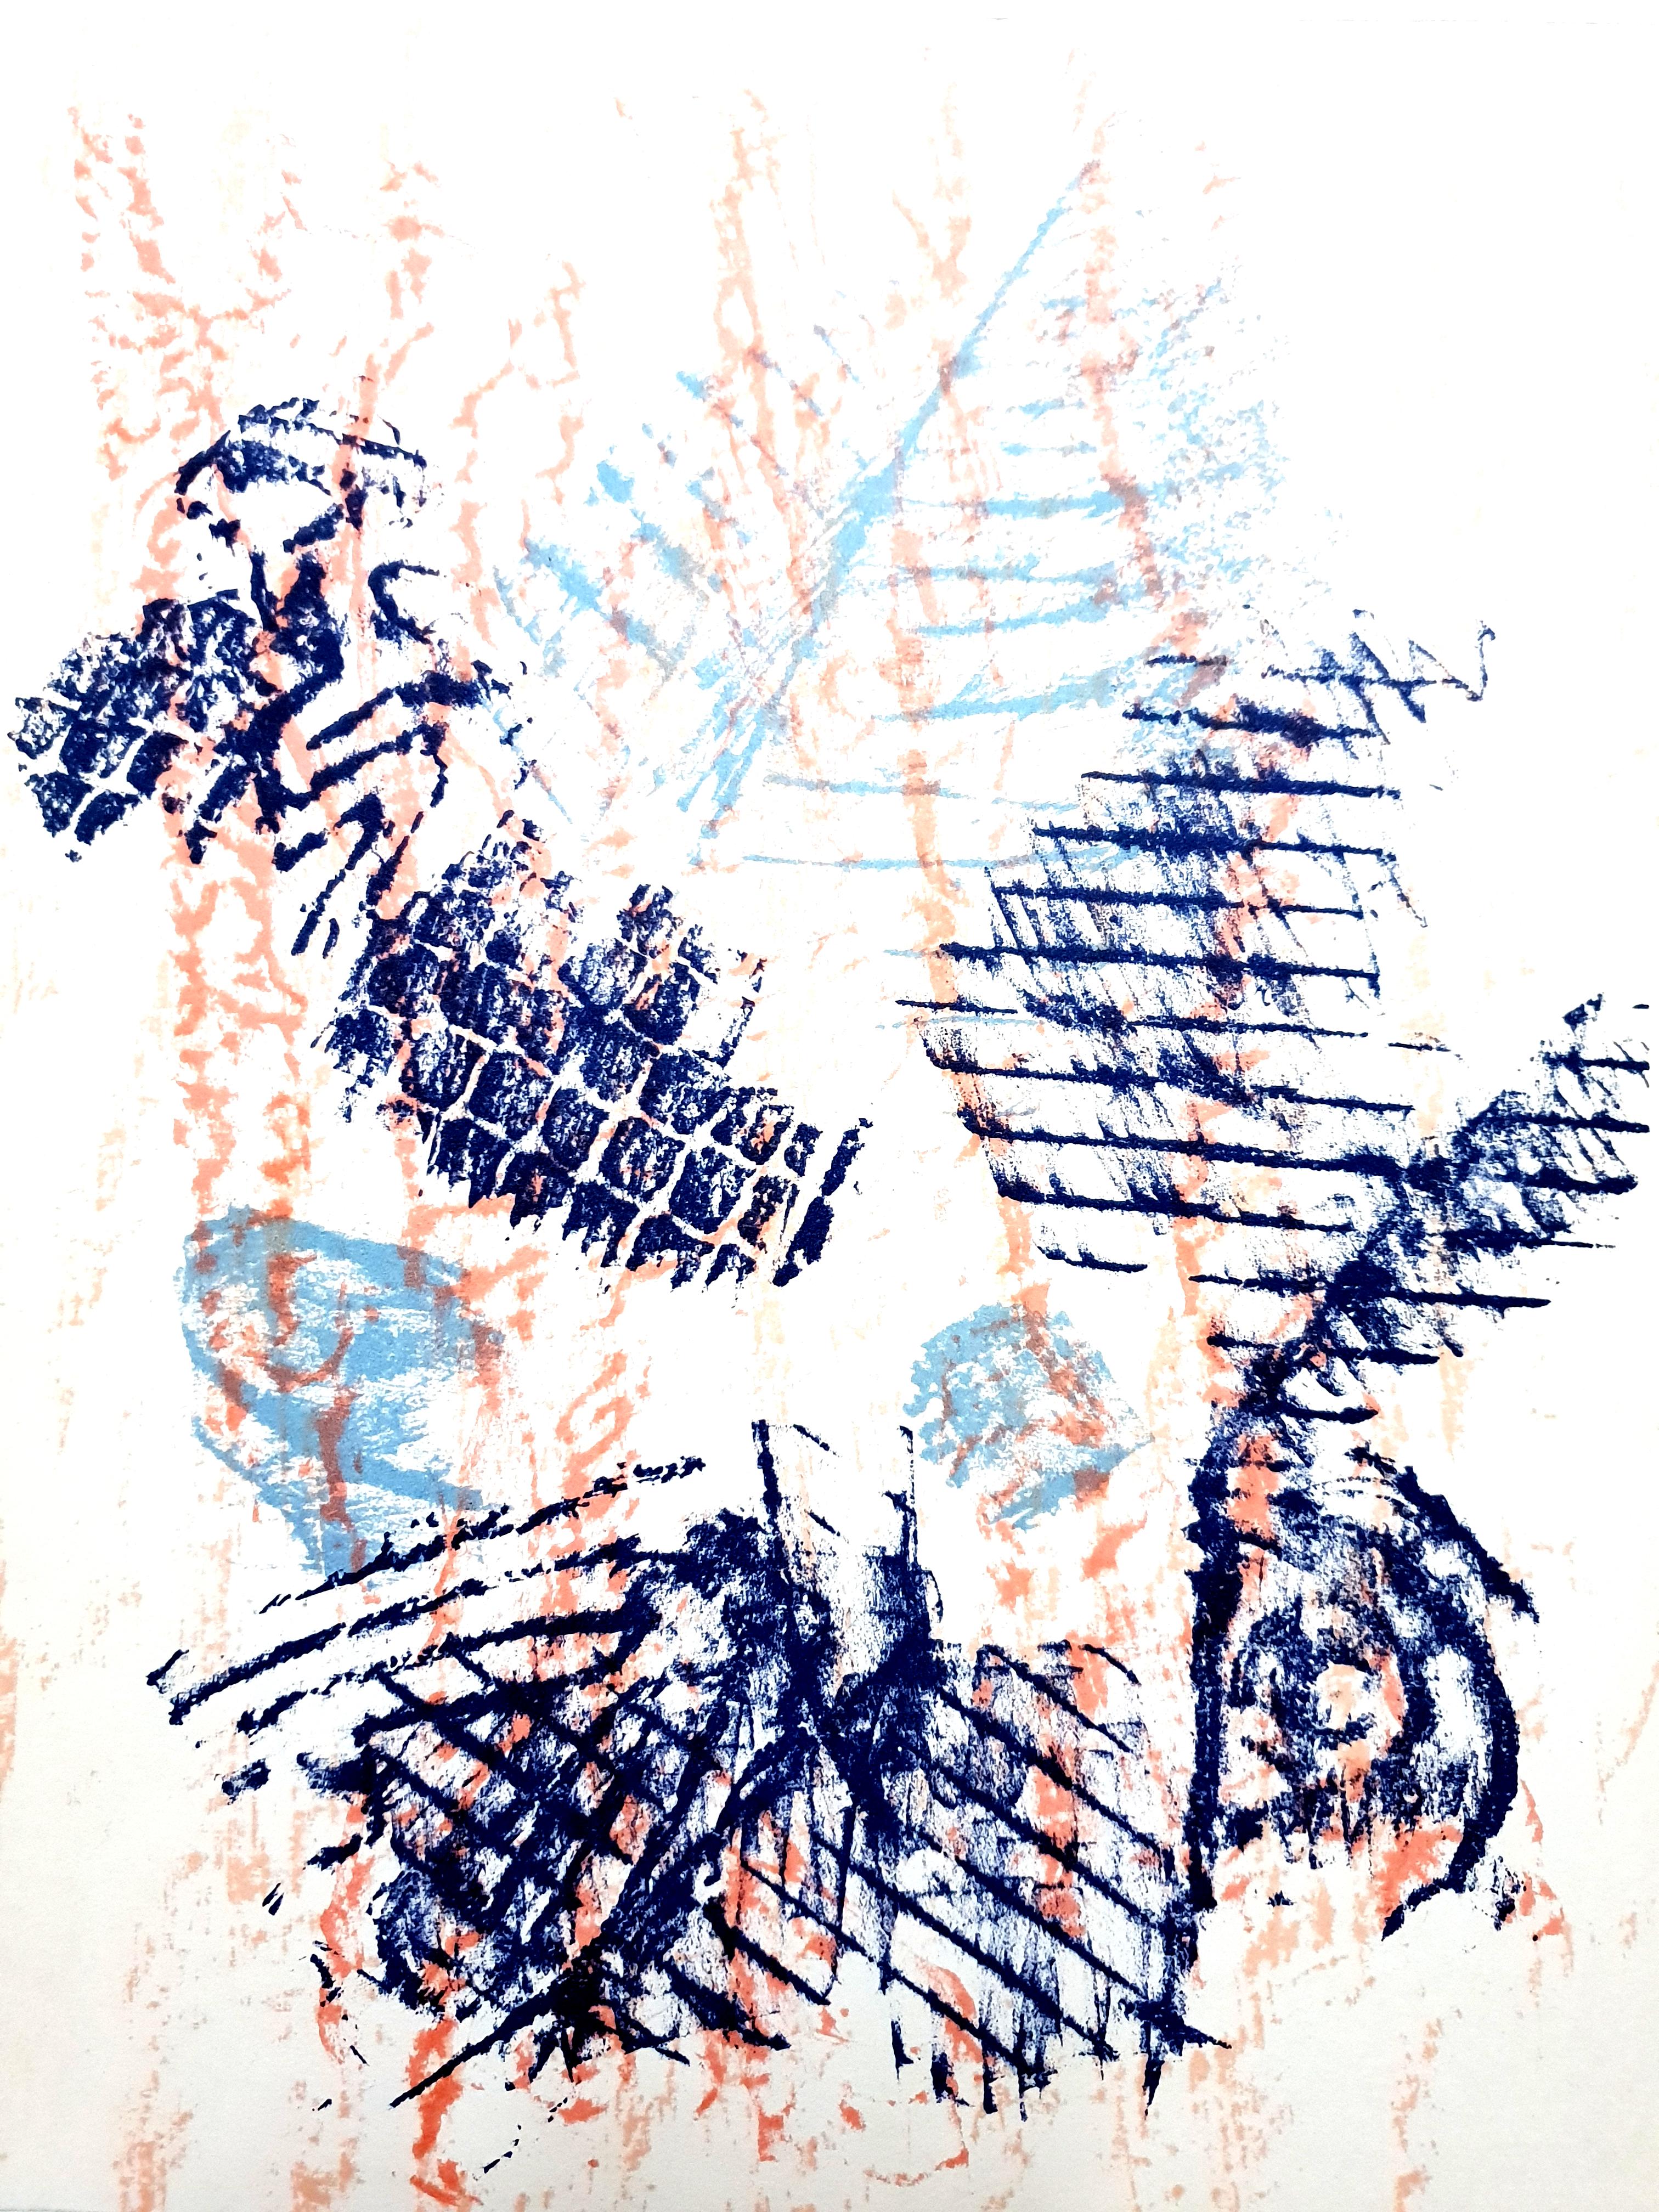 Max Ernst - Les oiseaux -  Lithographie originale
Oiseaux, 1964 
Dimensions : 32 x 24 cm
D'après la revue d'art XXe siècle
Non signé et non numéroté tel qu'il a été émis